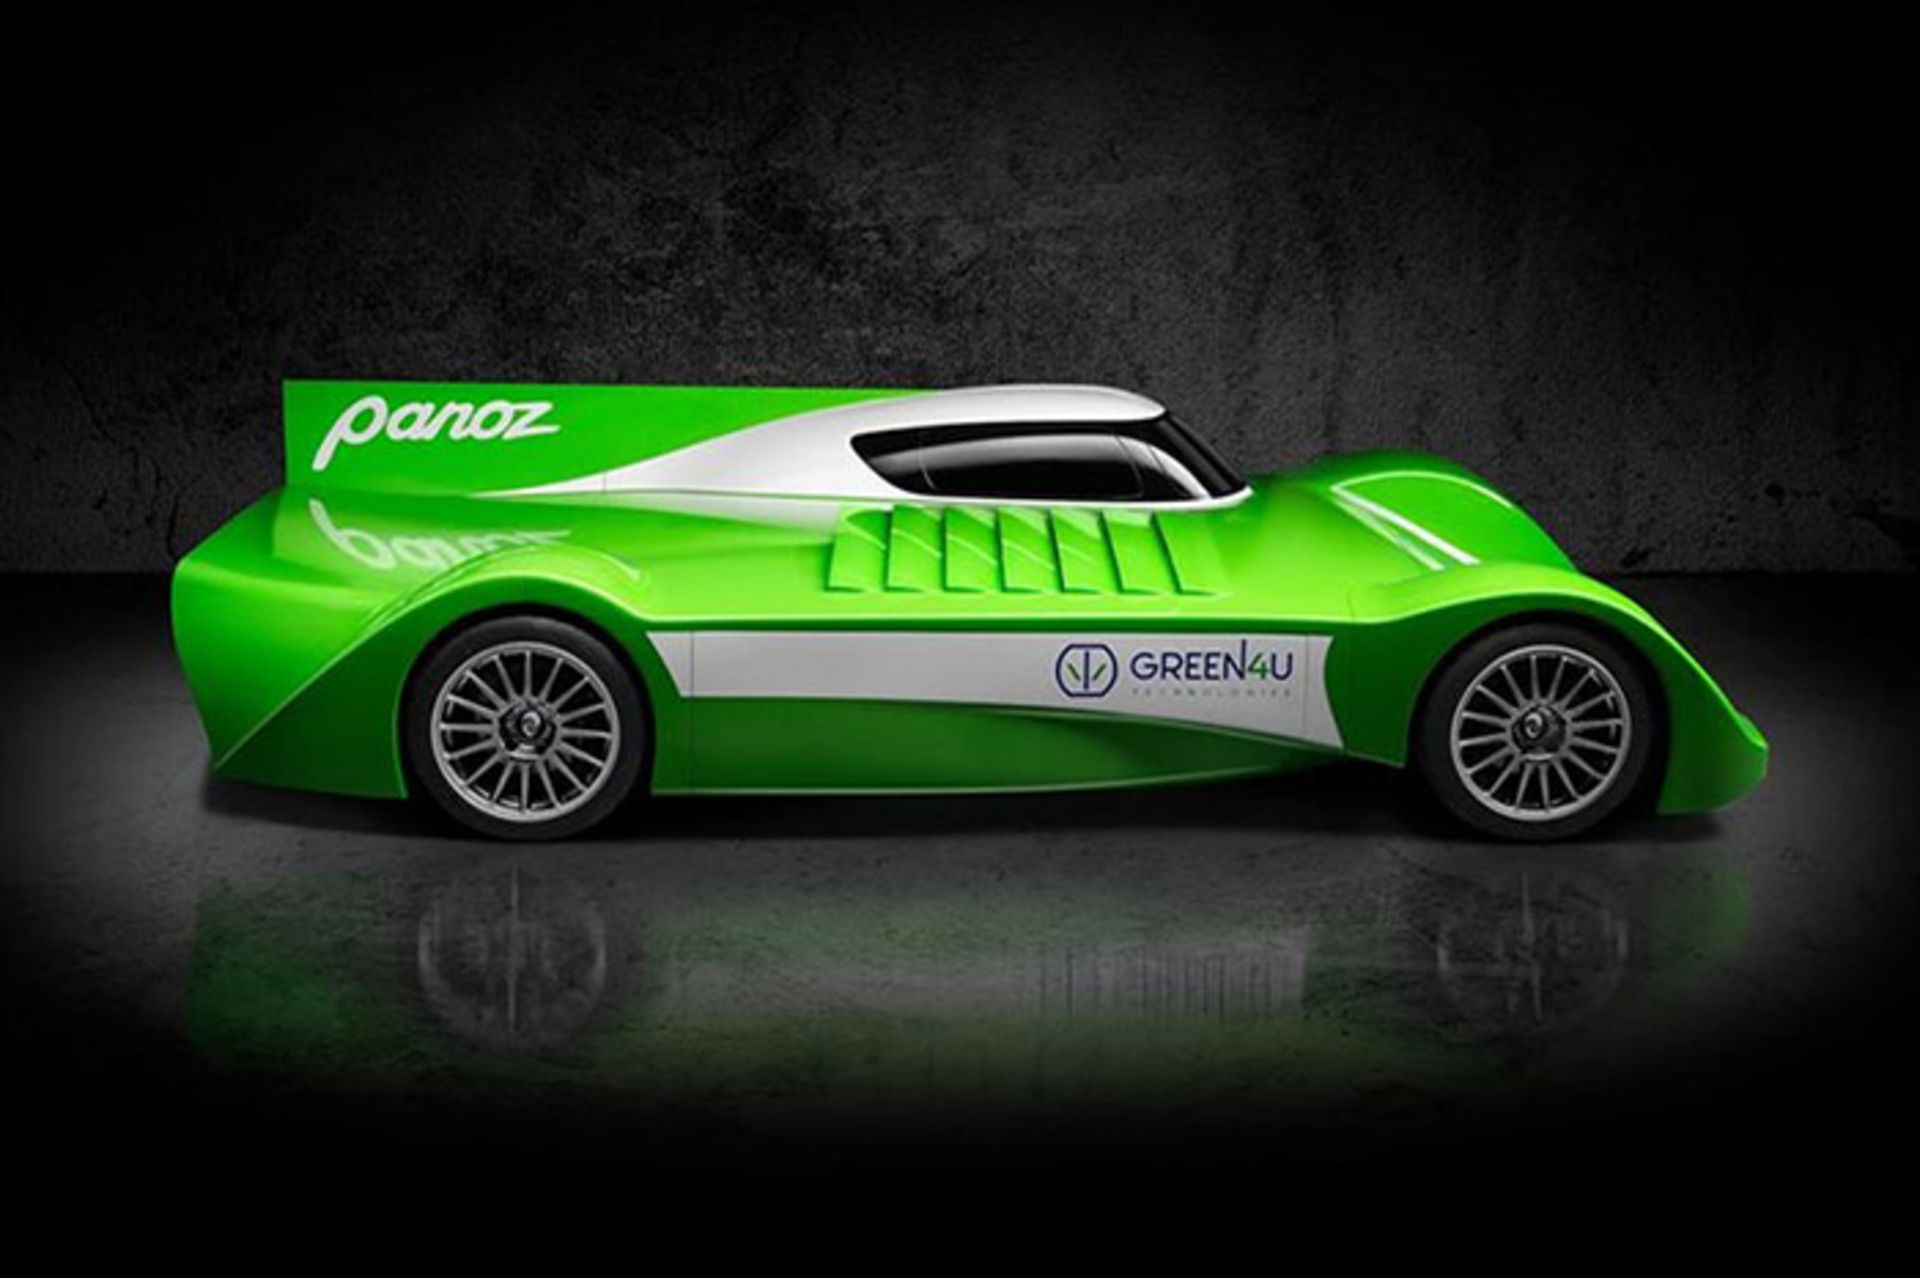 پانوز الکتریکی مسابقات استقامت  Panoz endurance electric racer